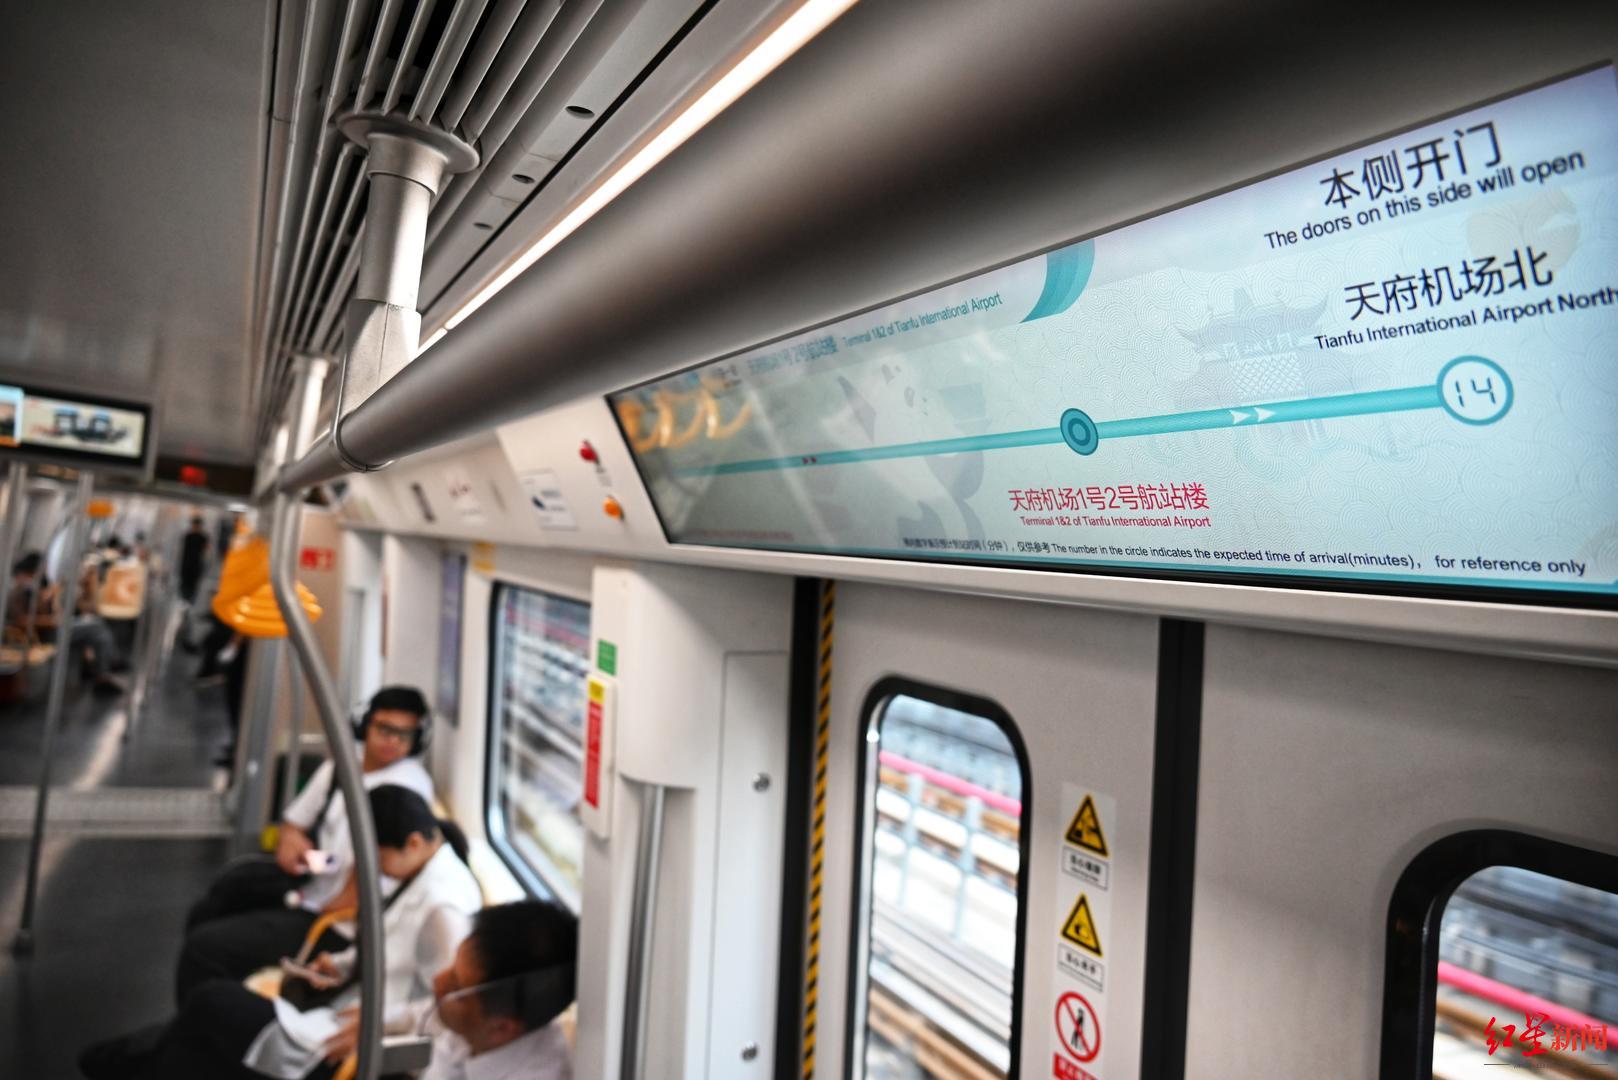 体验成都地铁18号线直达线:全程时速140km/h,34分钟准时到达天府机场